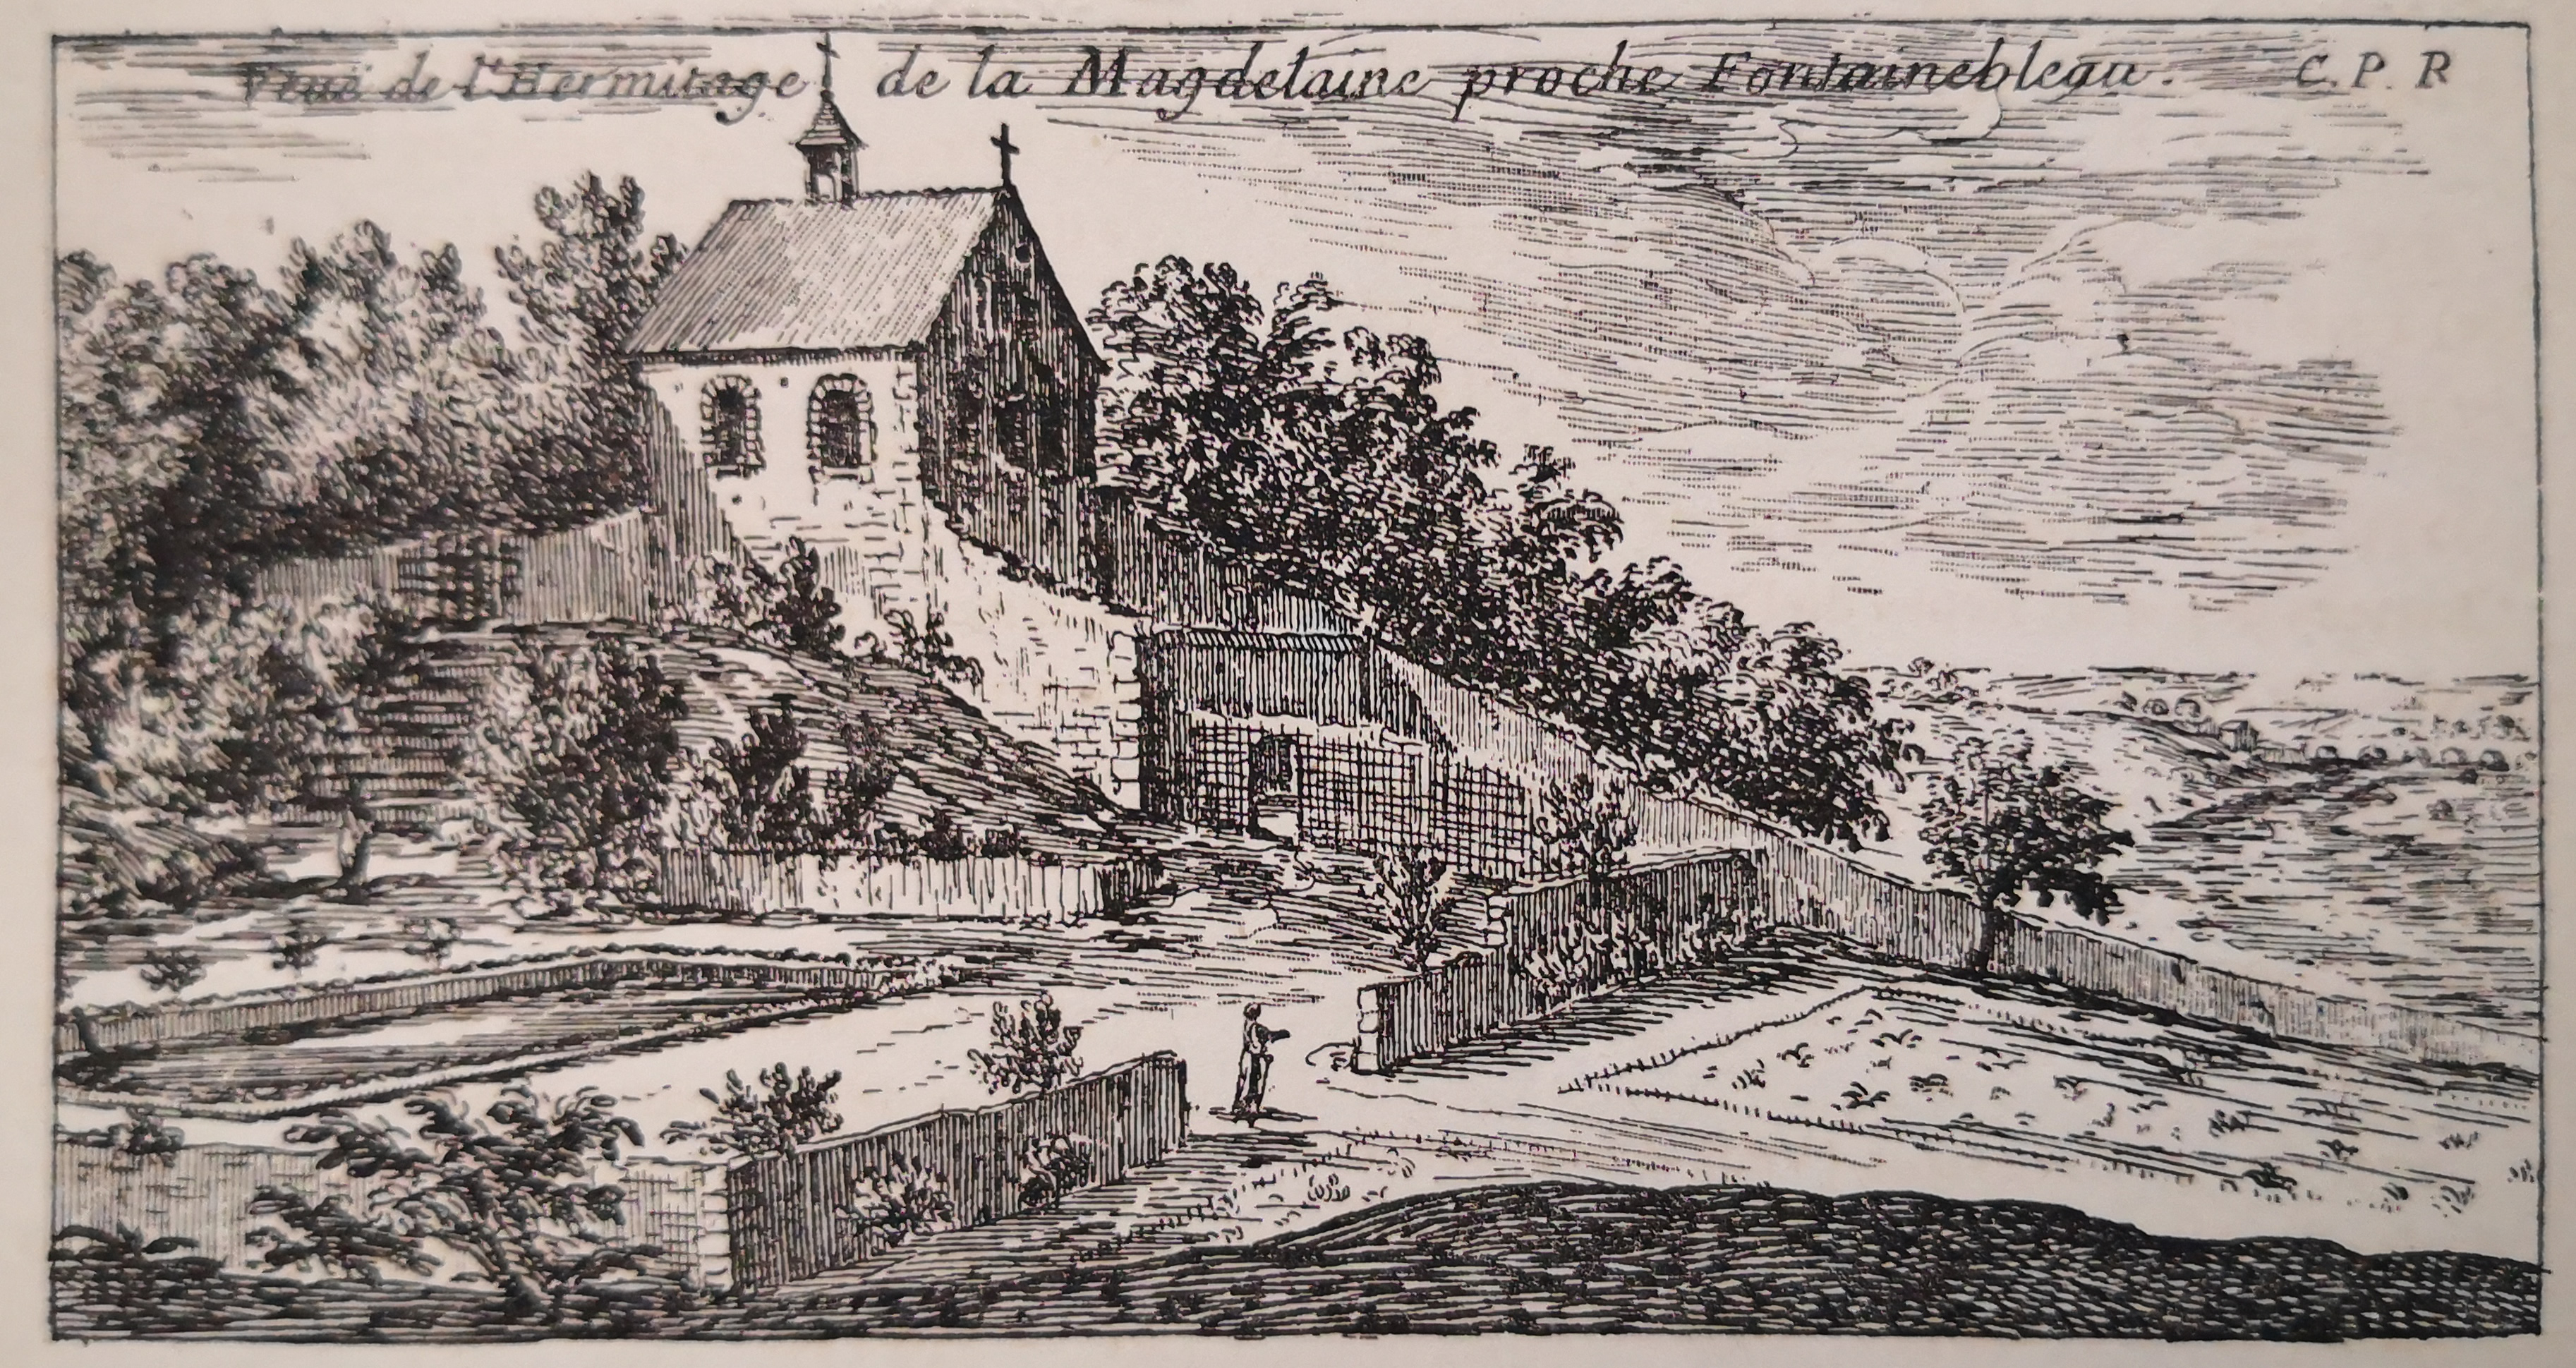 Israël Silvestre : Veuë de l'hermitage de la Magdeleine proche Fontainebleau. 